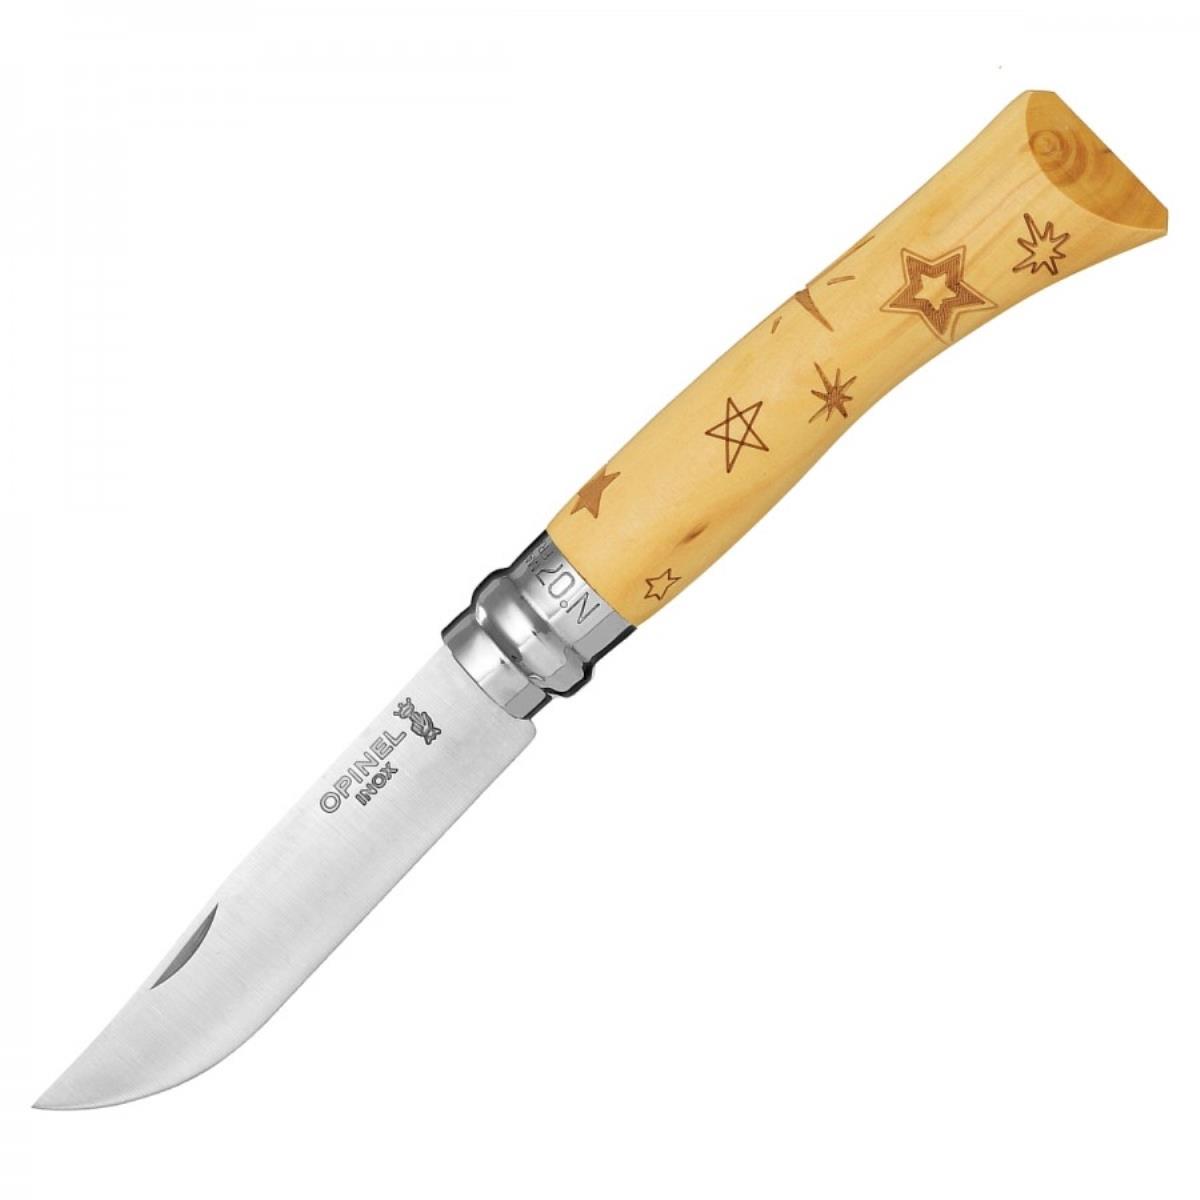 Нож №7 VRI Nature-Stars (звезды) нержавеющая сталь, рукоять самшит, длина клинка 8см OPINEL термосумка для двух детских бутылочек nature